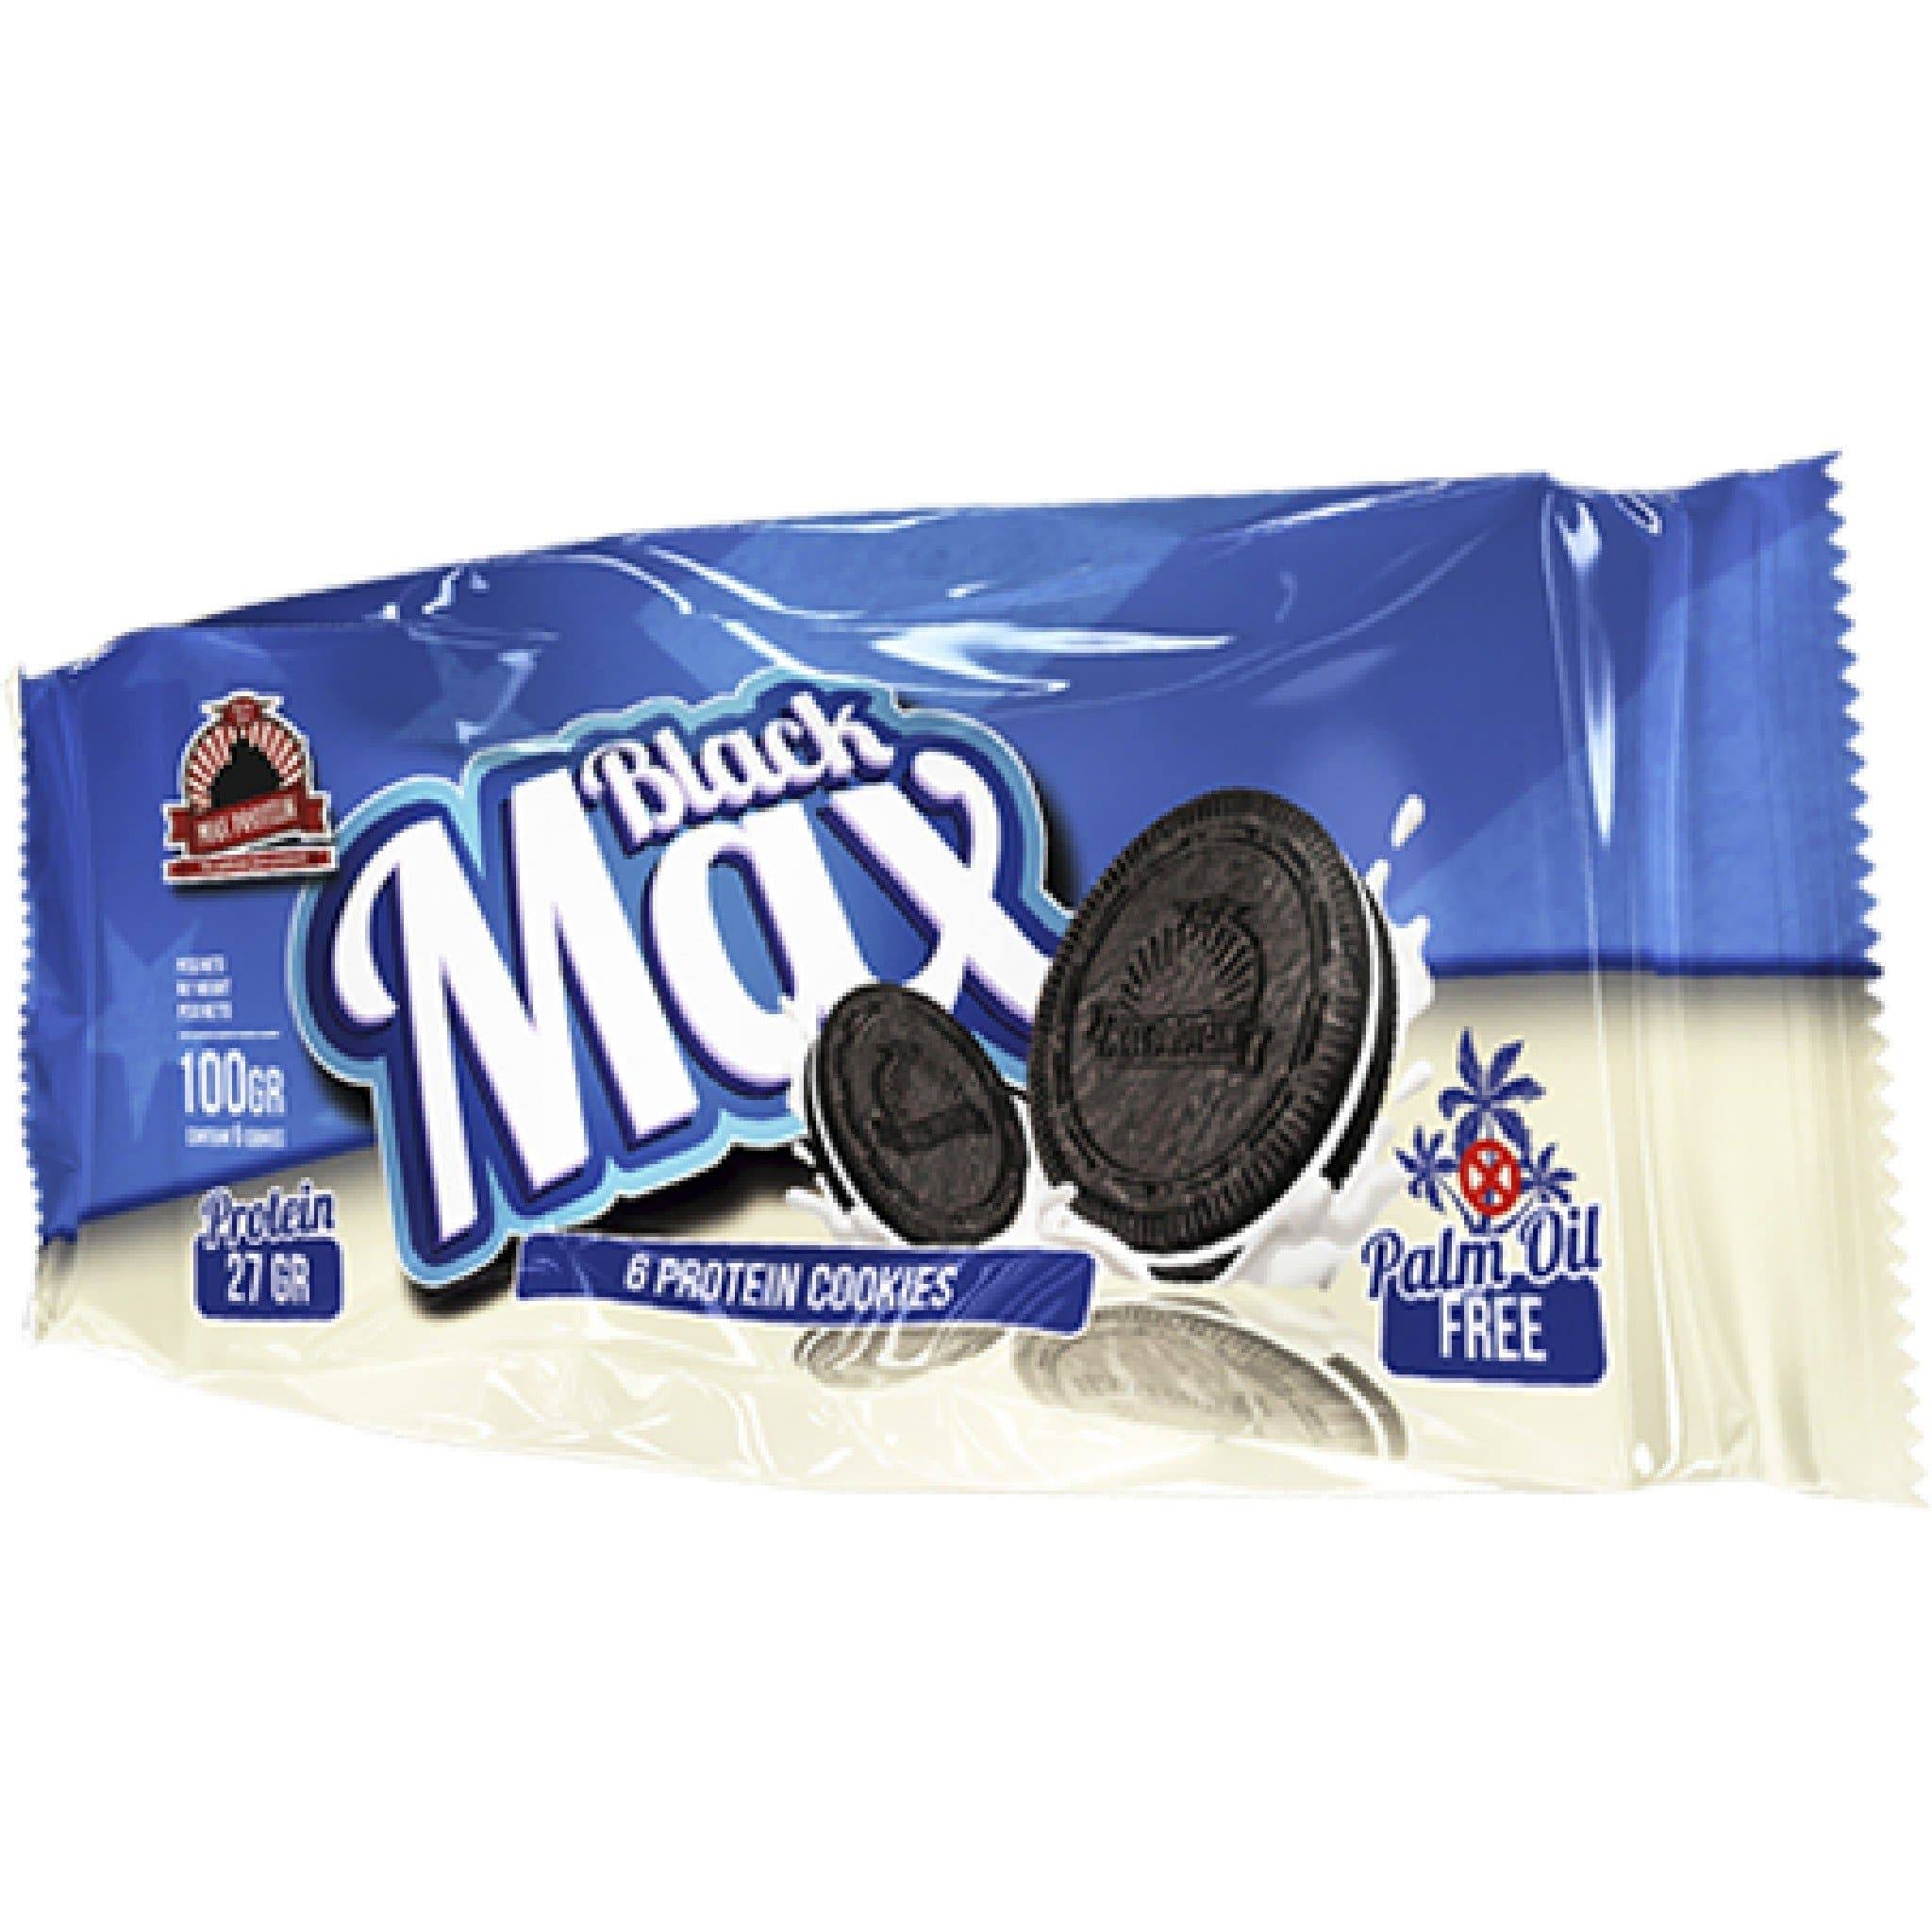 Black Max 6 Protein Cookies - 8 Cookies, 100g